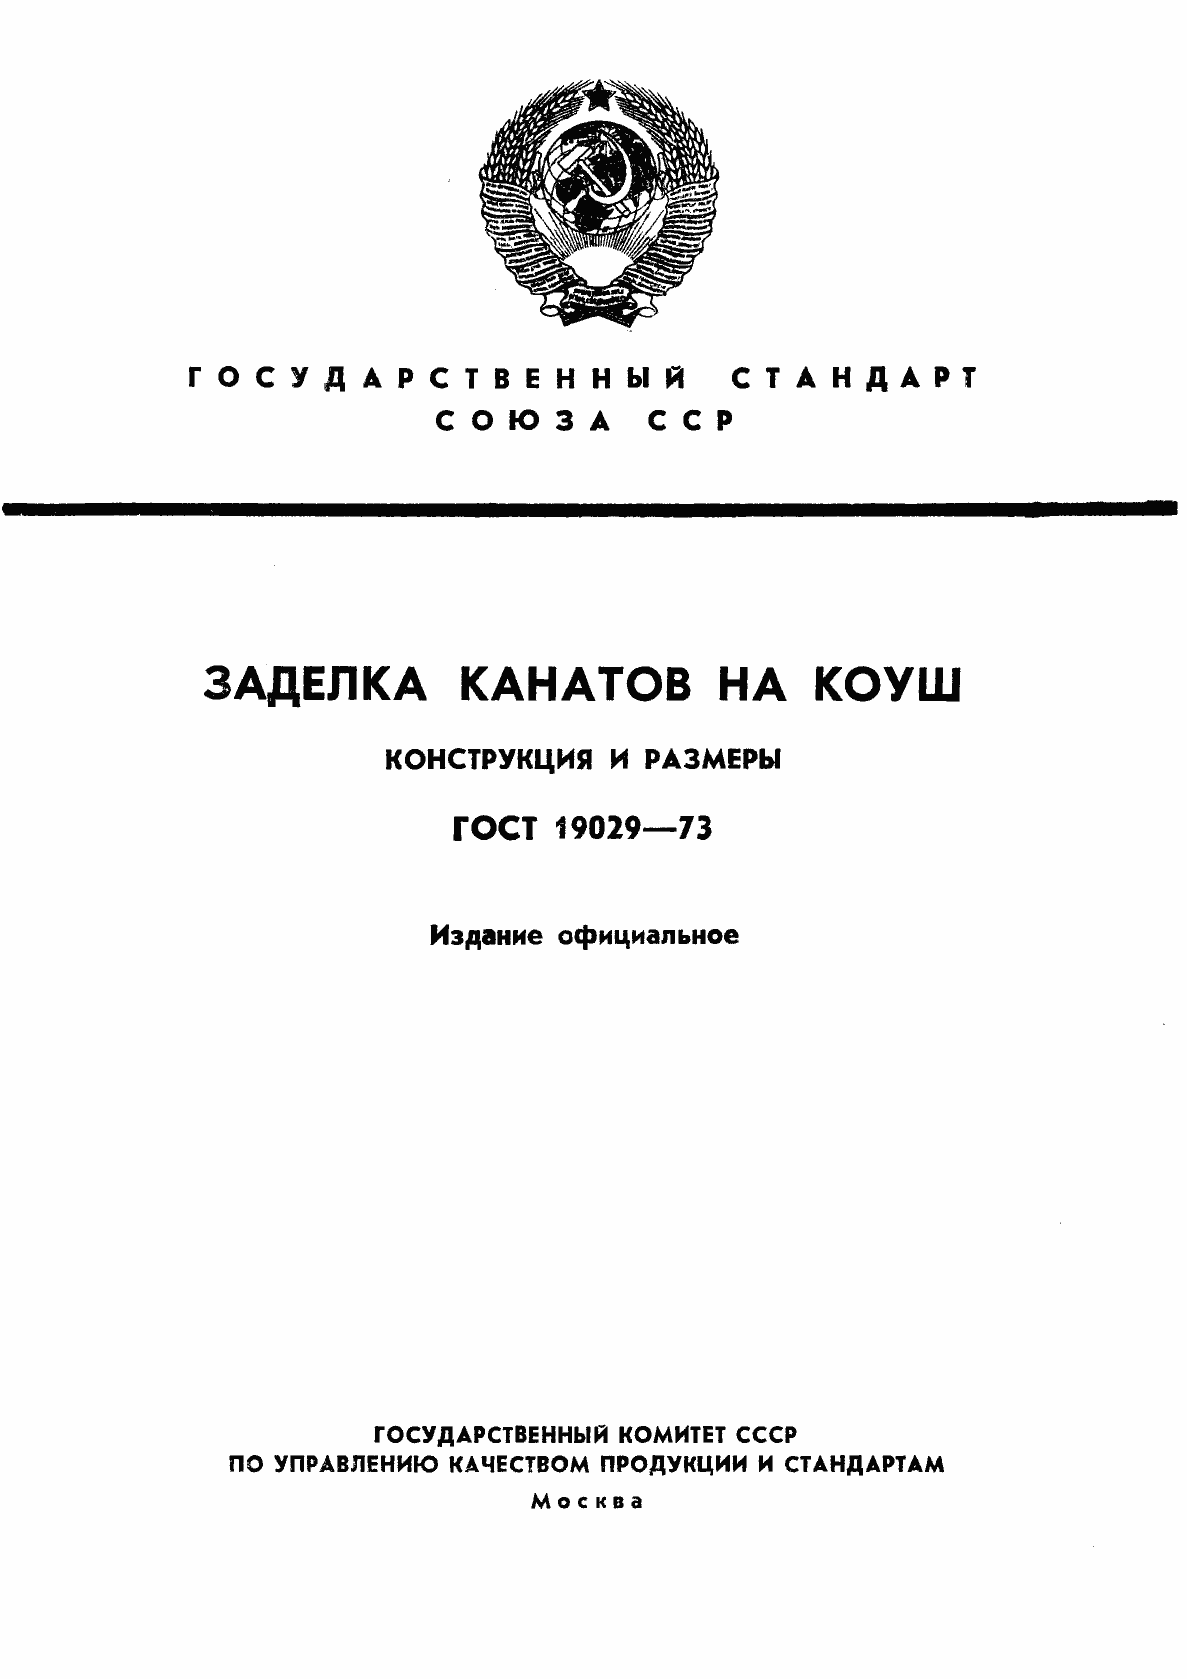  19029-73.  1